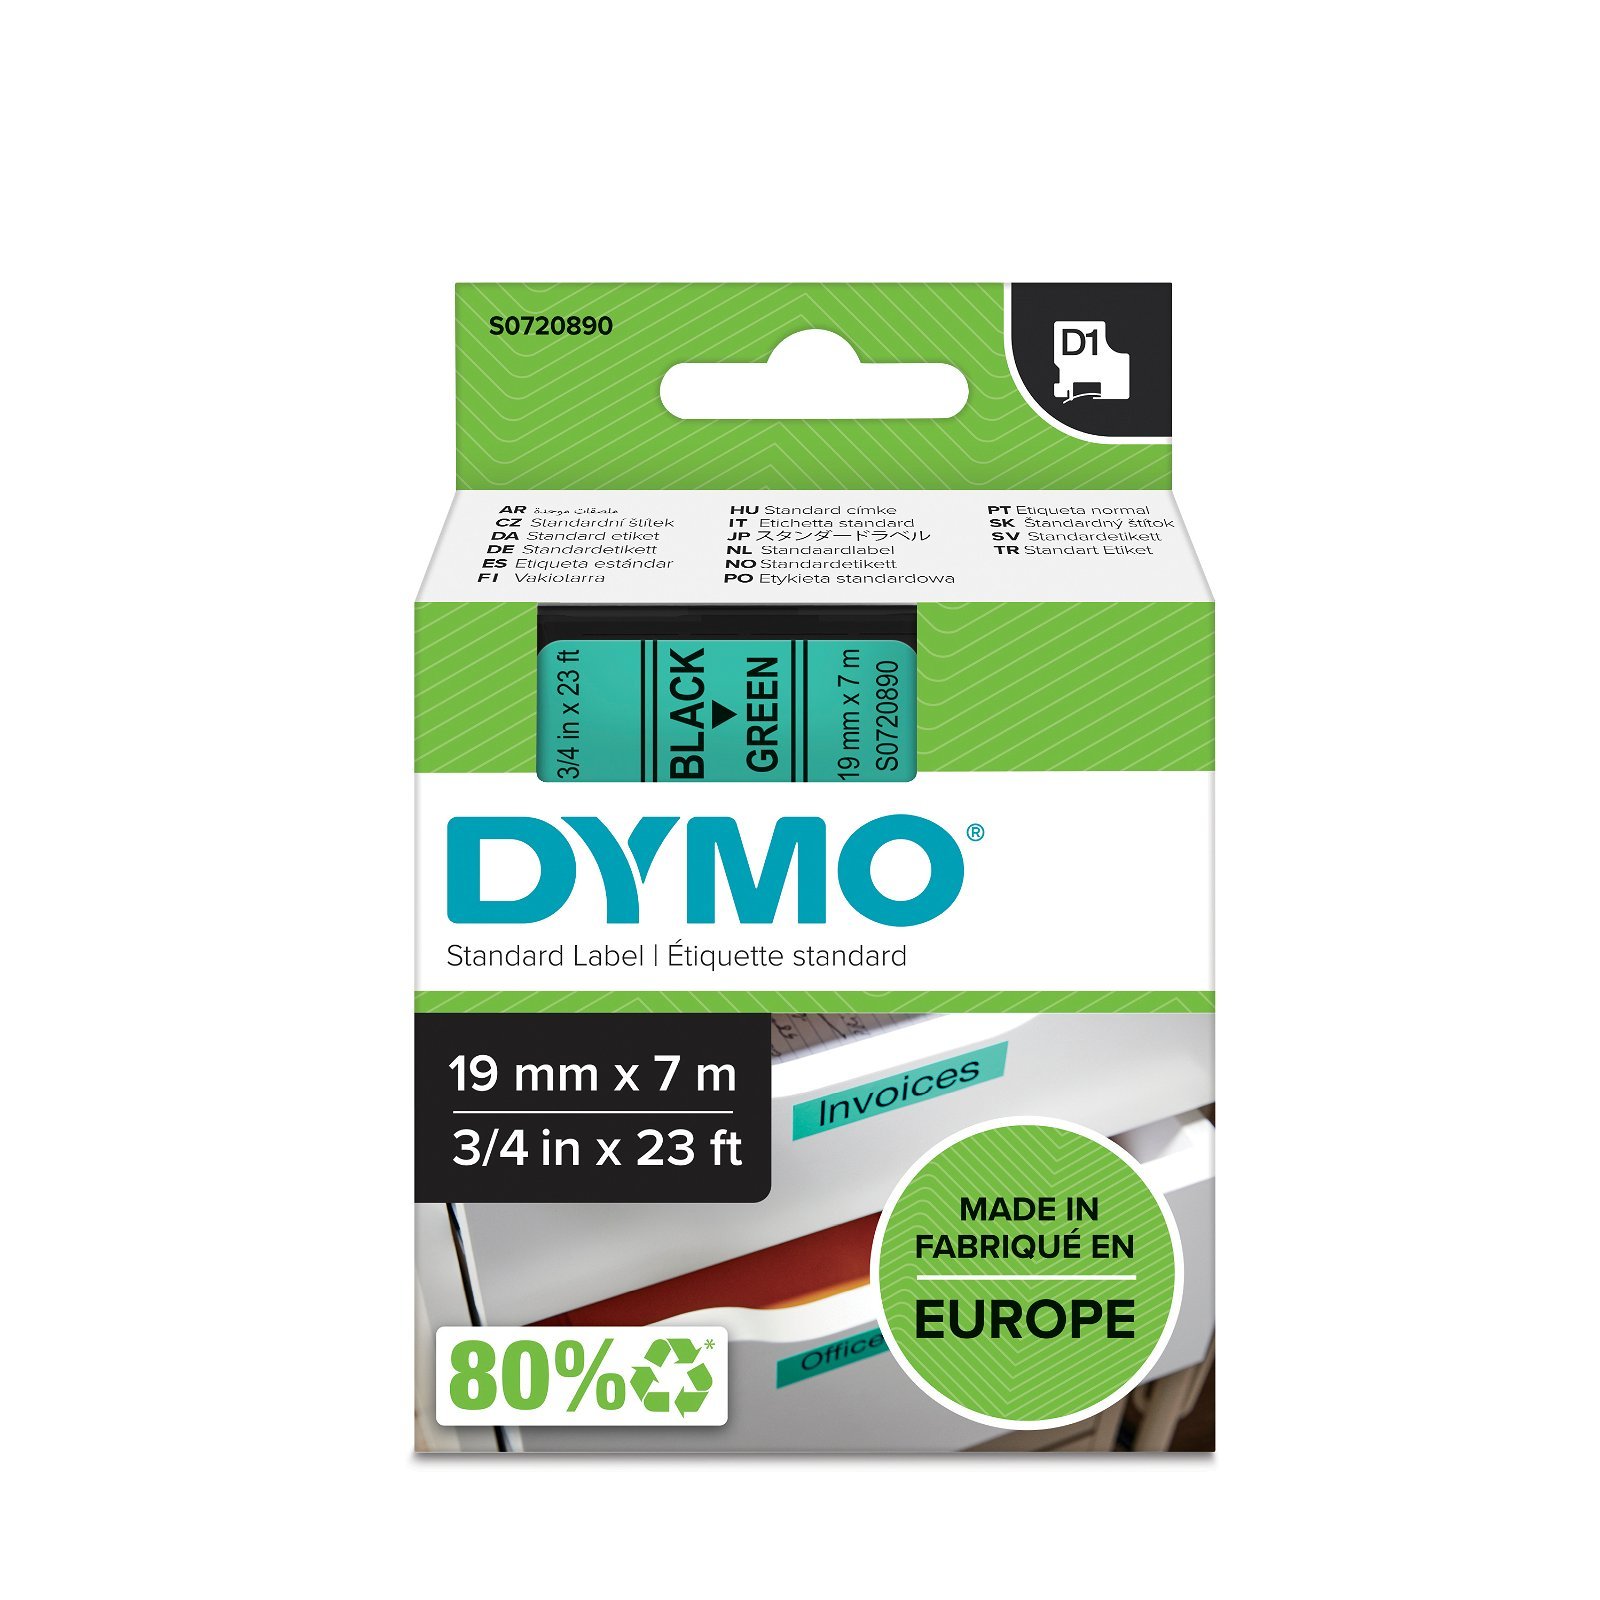 Dymo D1 standard tapekasette 19 mm sort;gron Polyester